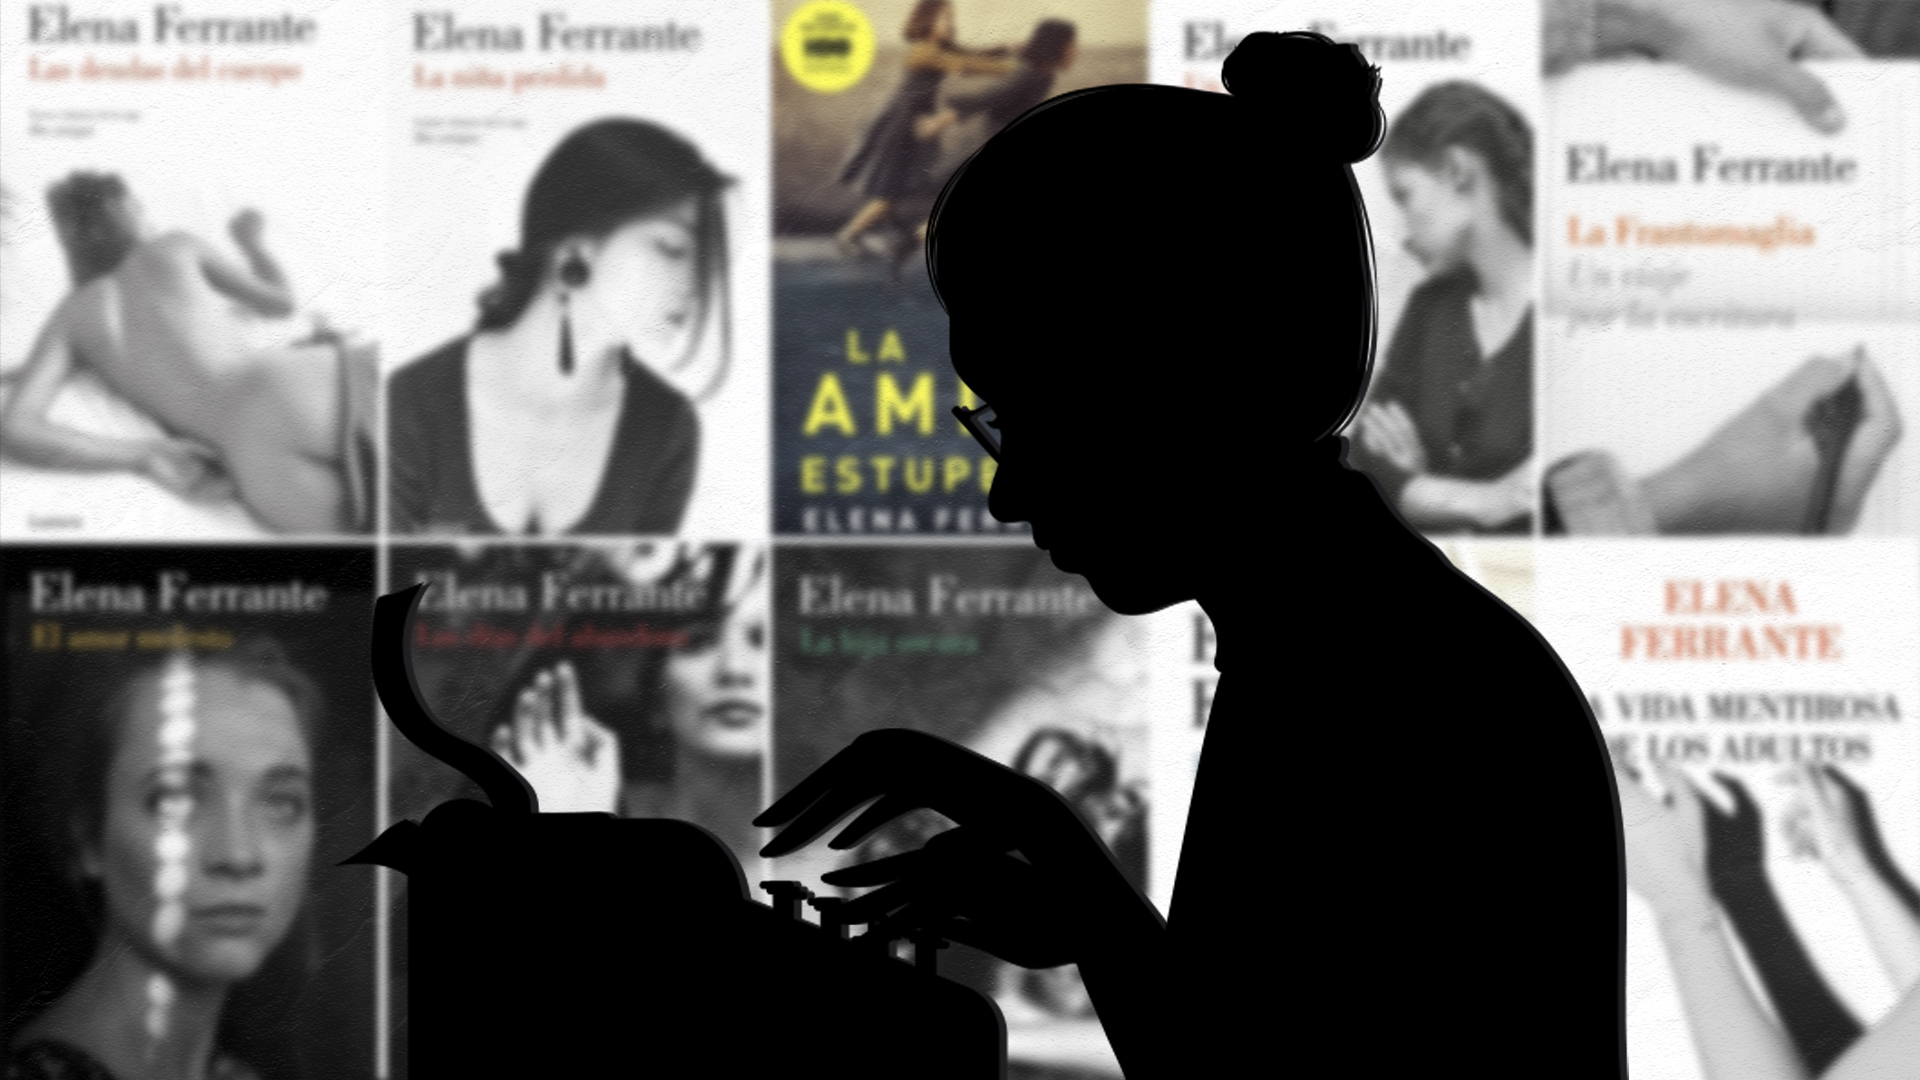 Lo nuevo de Elena Ferrante, la exitosa autora best-seller cuya identidad es un misterio